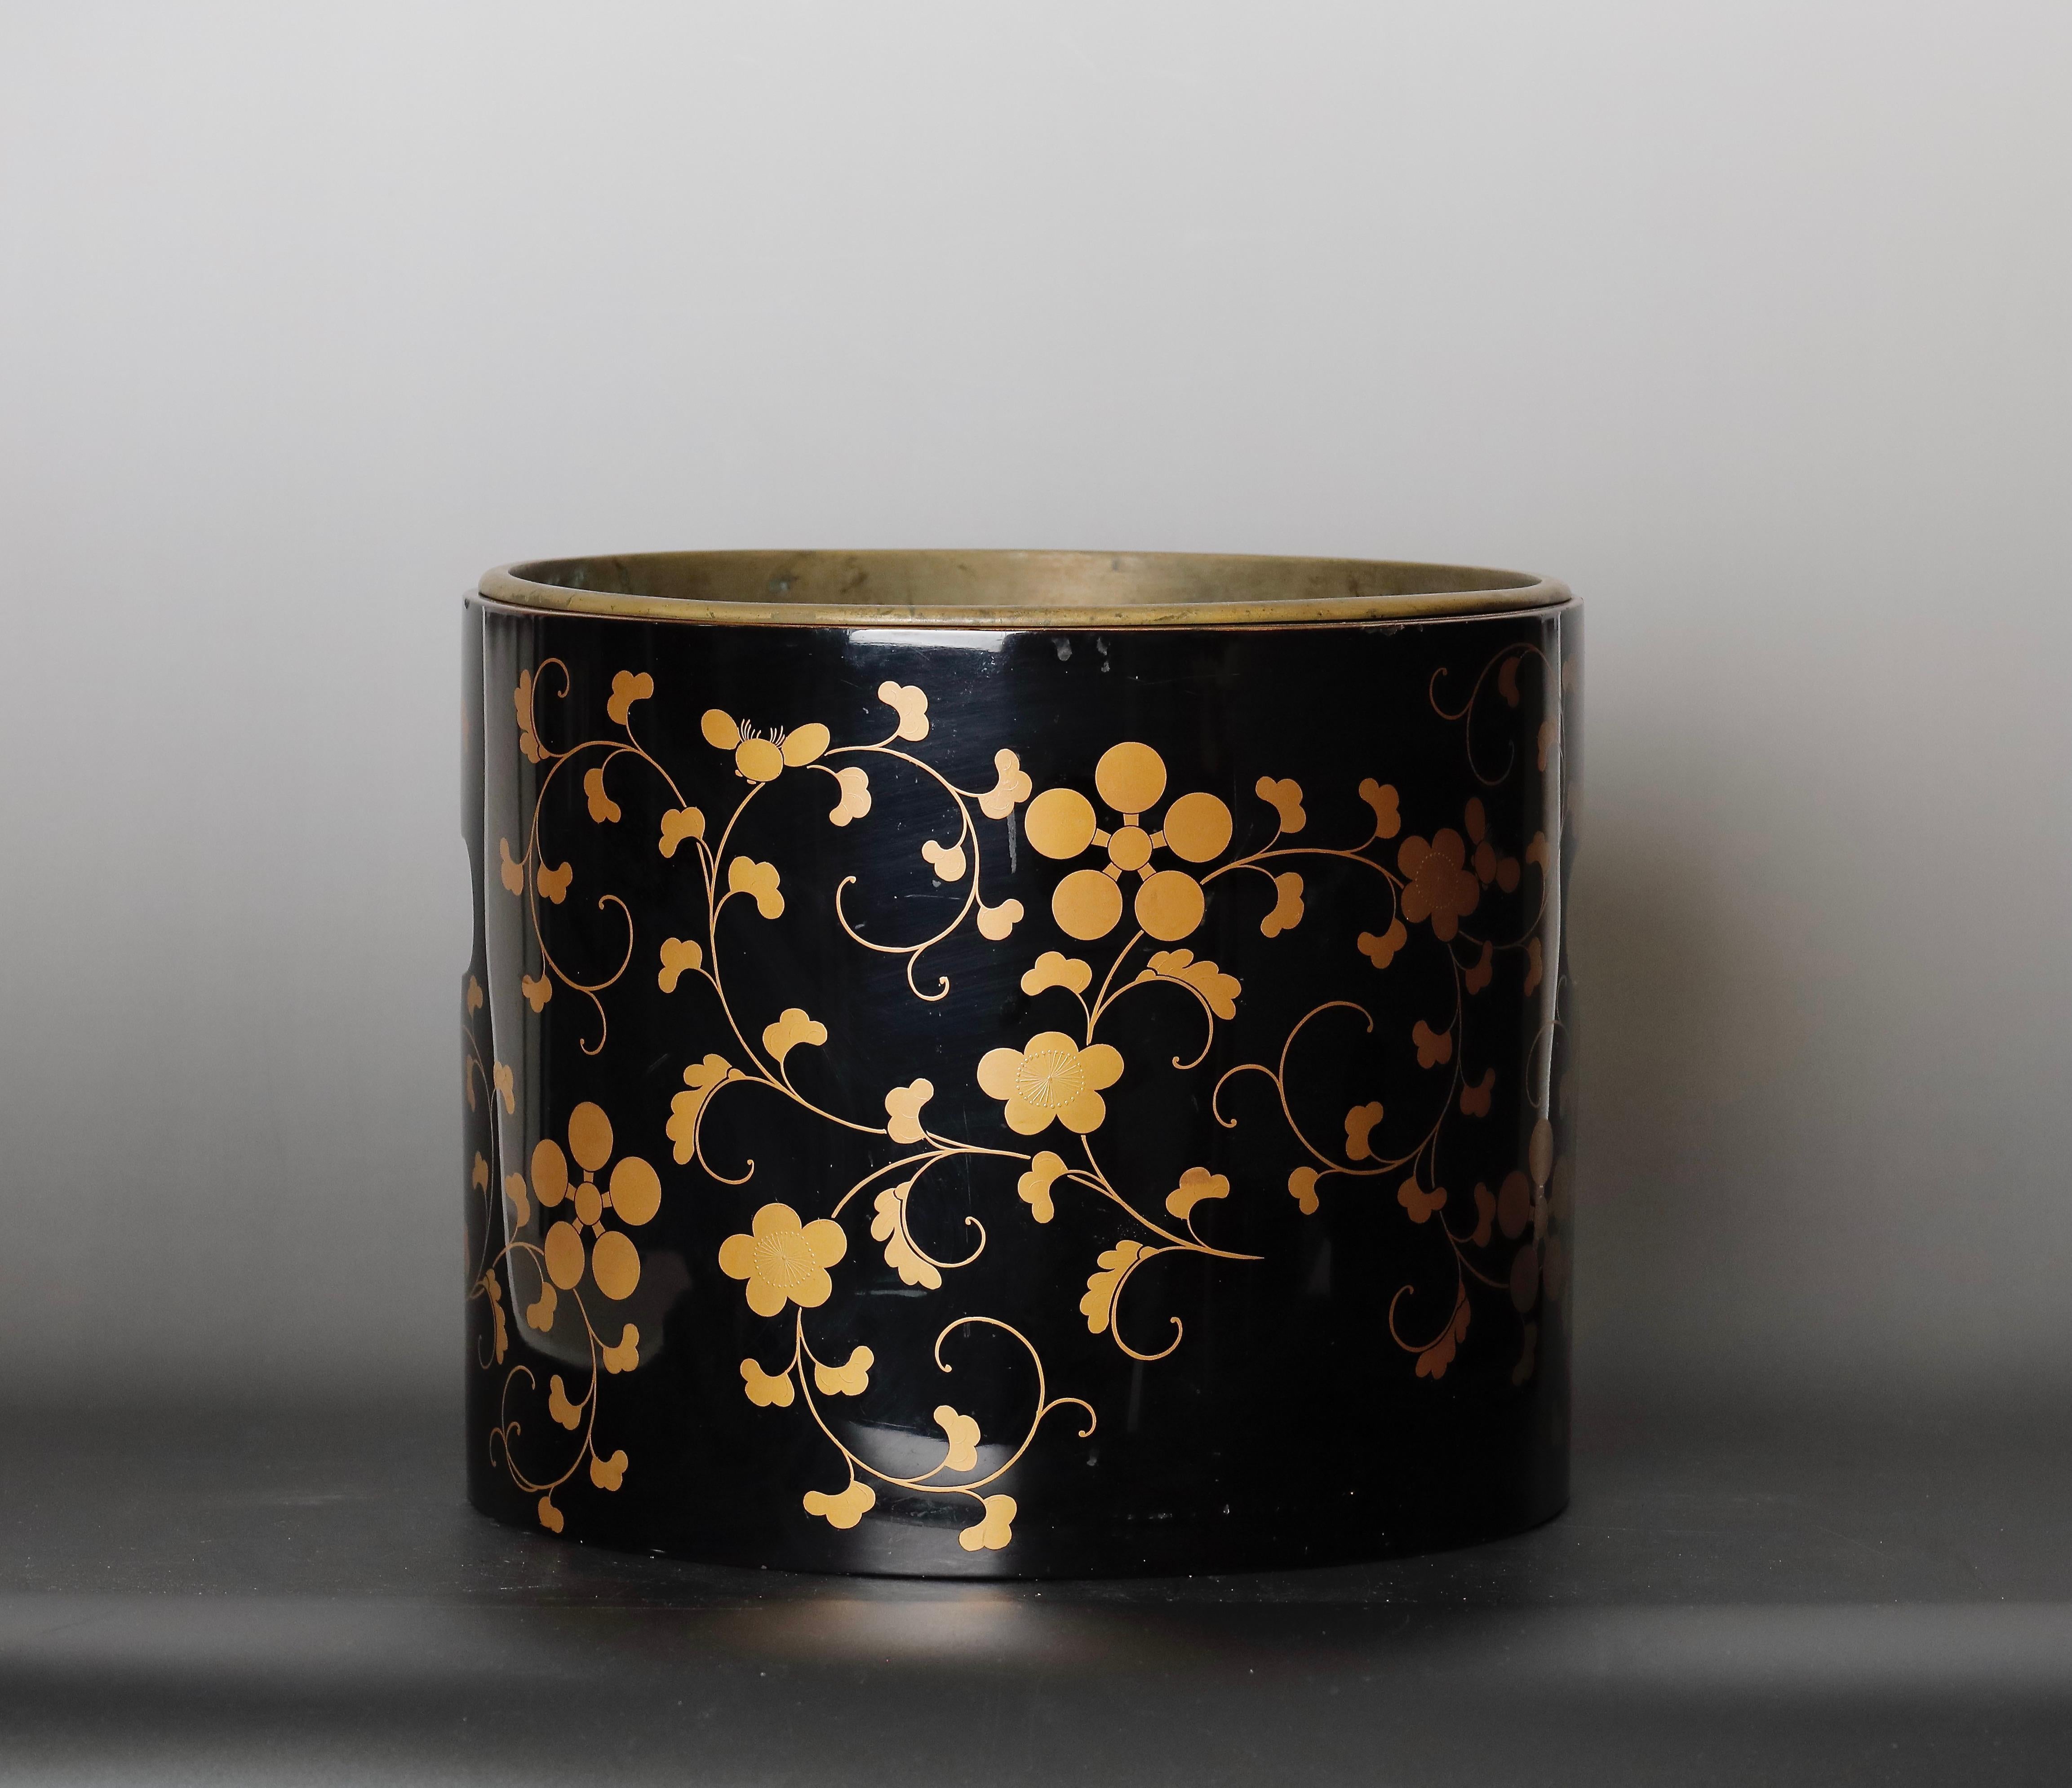 Ein Räuchergefäß aus feinem Lack mit Makie Gold Design.

Dieses feine Lack-Räuchergefäß ist ein beeindruckendes Beispiel für japanische Handwerkskunst. Es stammt aus der Edo-Meiji-Periode, 19. Jahrhundert, und ist in gutem Zustand mit einigen